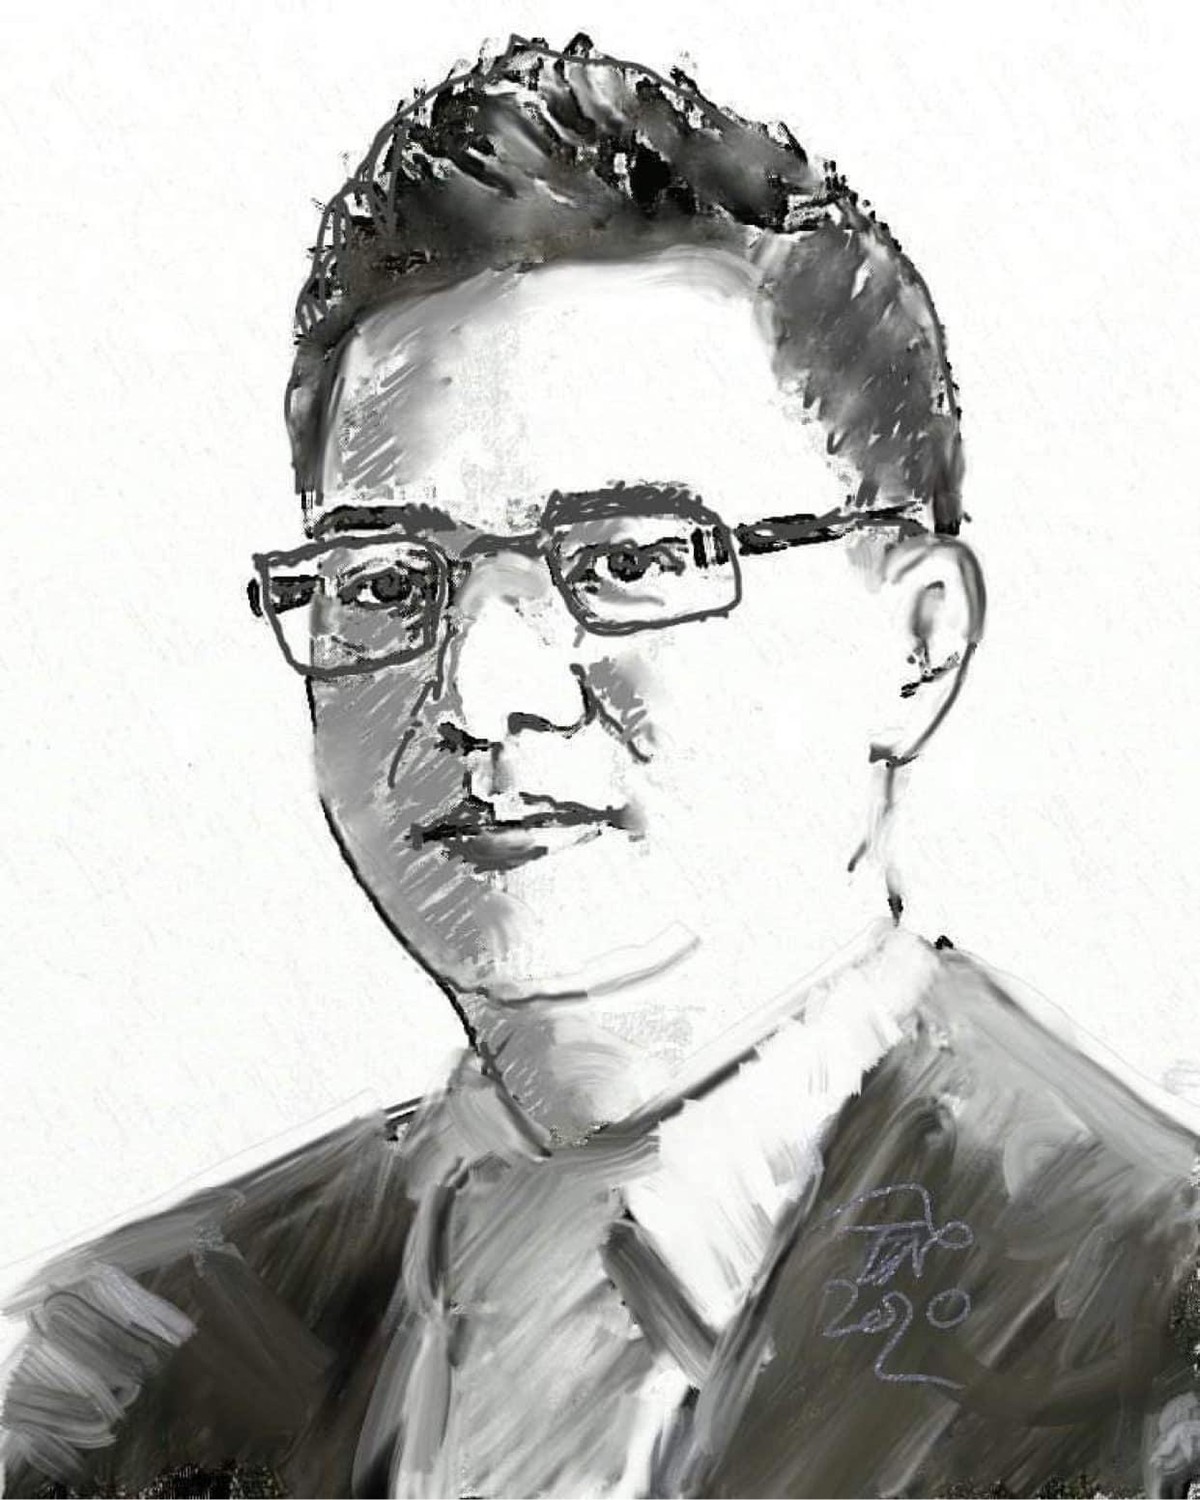 Nhà báo Lê Quốc Minh: Báo chí phải “vắt óc” để giữ chân độc giả trung thành ảnh 24